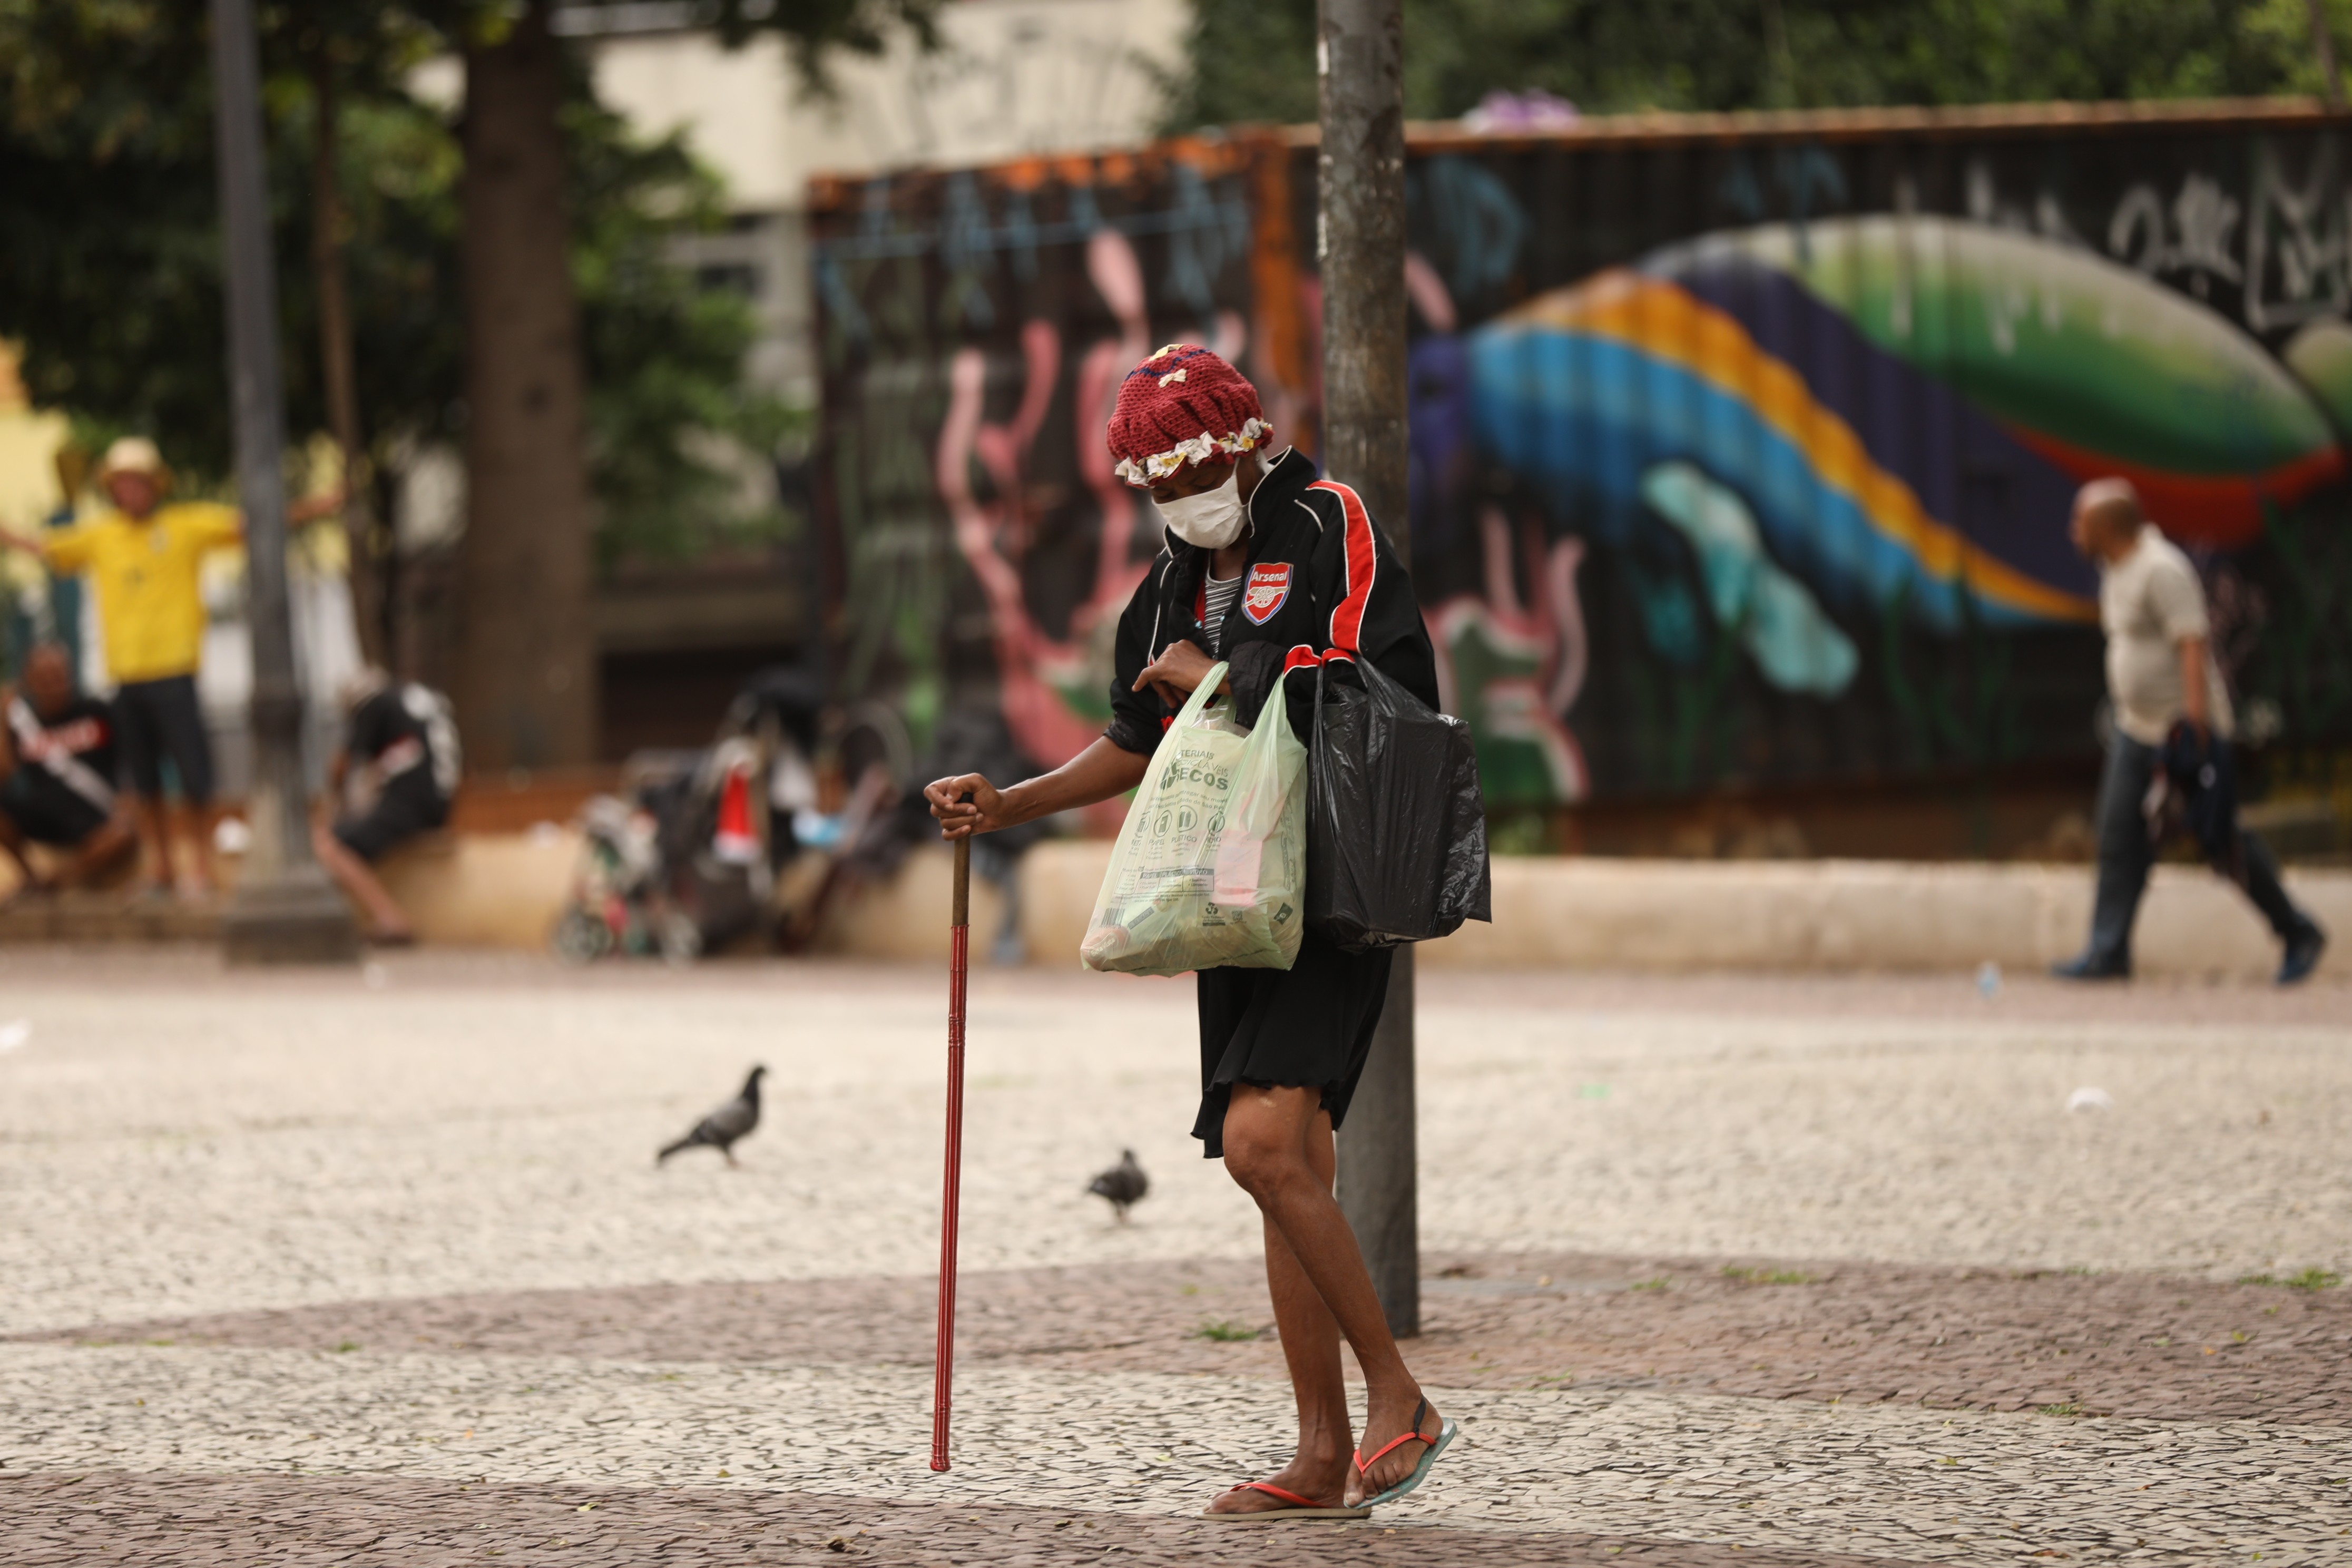 A nova realidade nas ruas de São Paulo (Foto: Leo Faria)